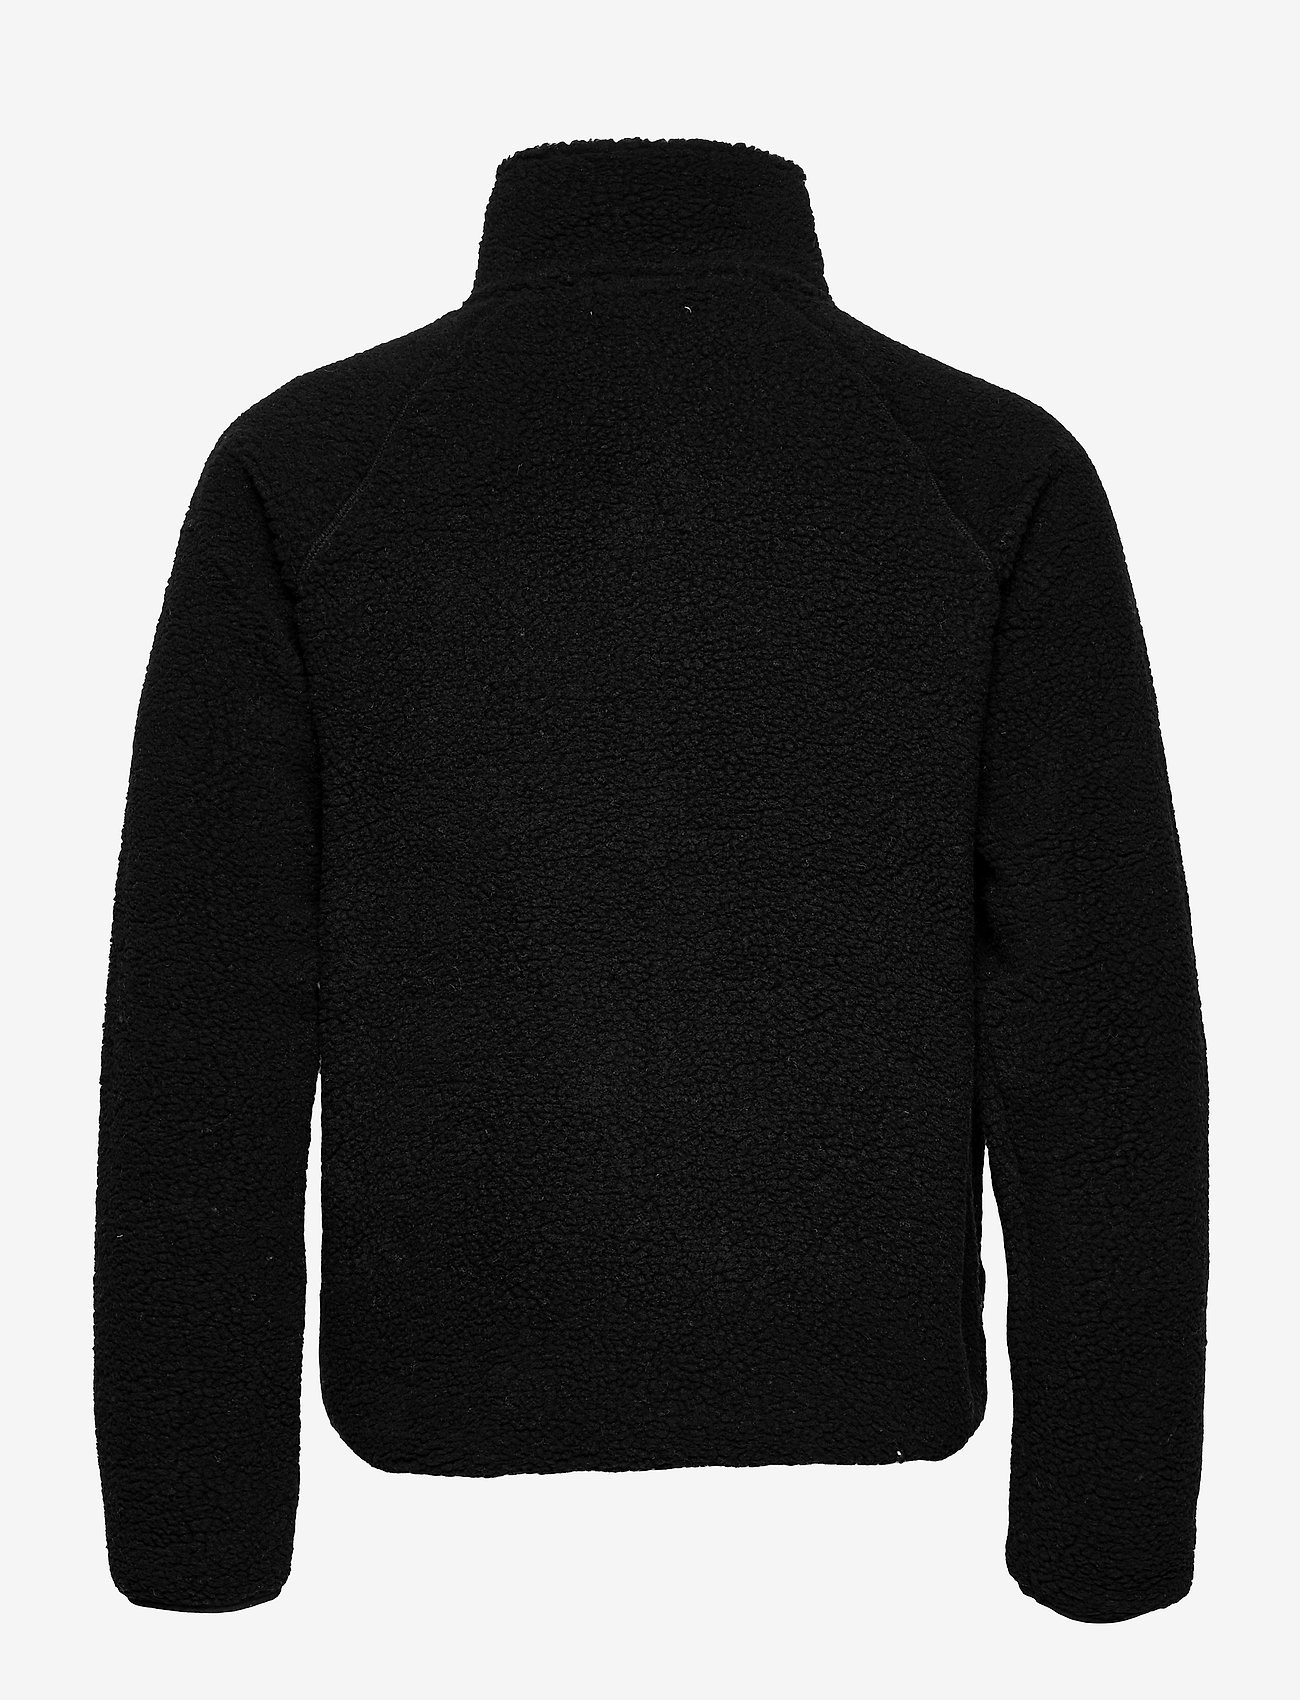 Resteröds - Resteröds Zip Fleece Jacket - mid layer jackets - svart - 1